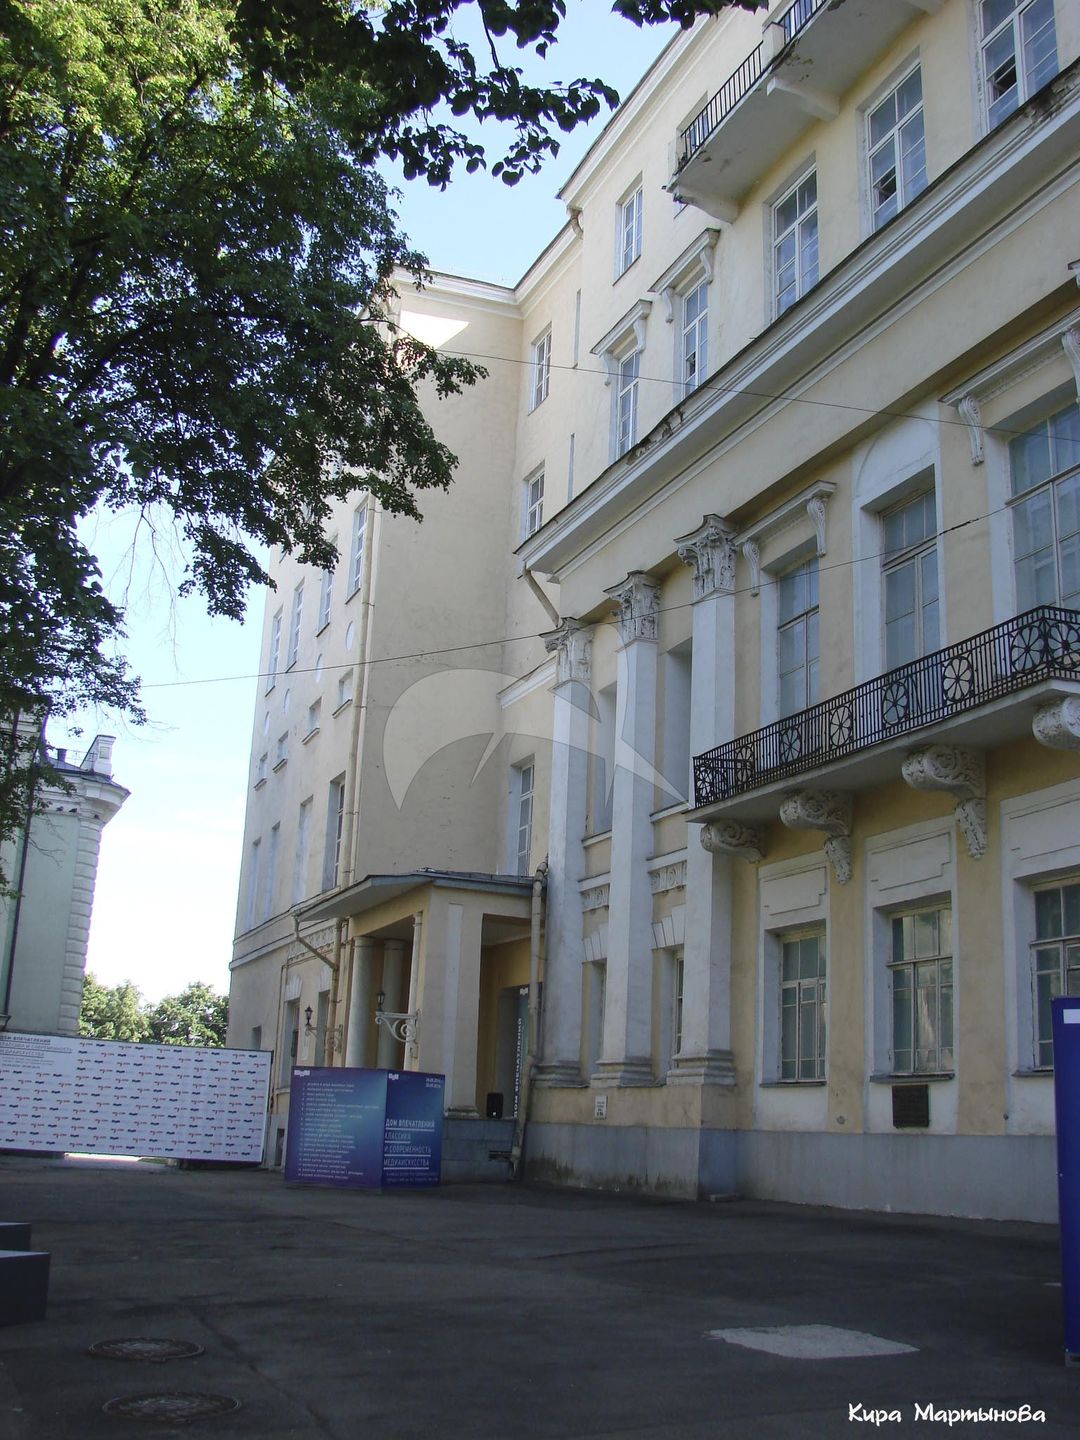 Главный дом, 1759 г., по проекту арх. С.И.Чевакинского, усадьба Голицына. Надстроен в 30-х гг. XX в.